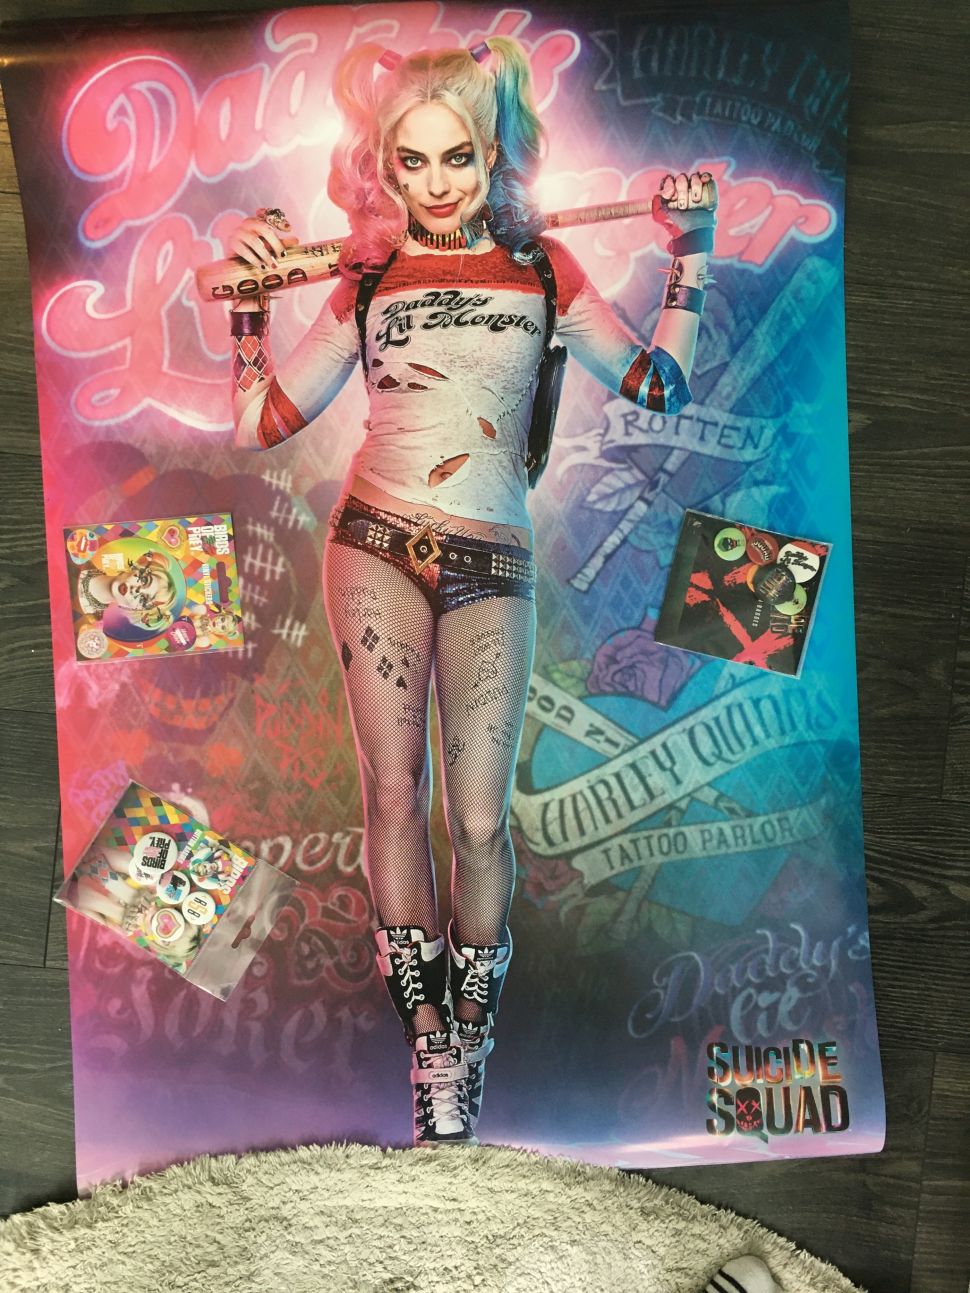 Filmowy plakat z filmu Legion Samobójców Suicide Squad z Harley Quinn